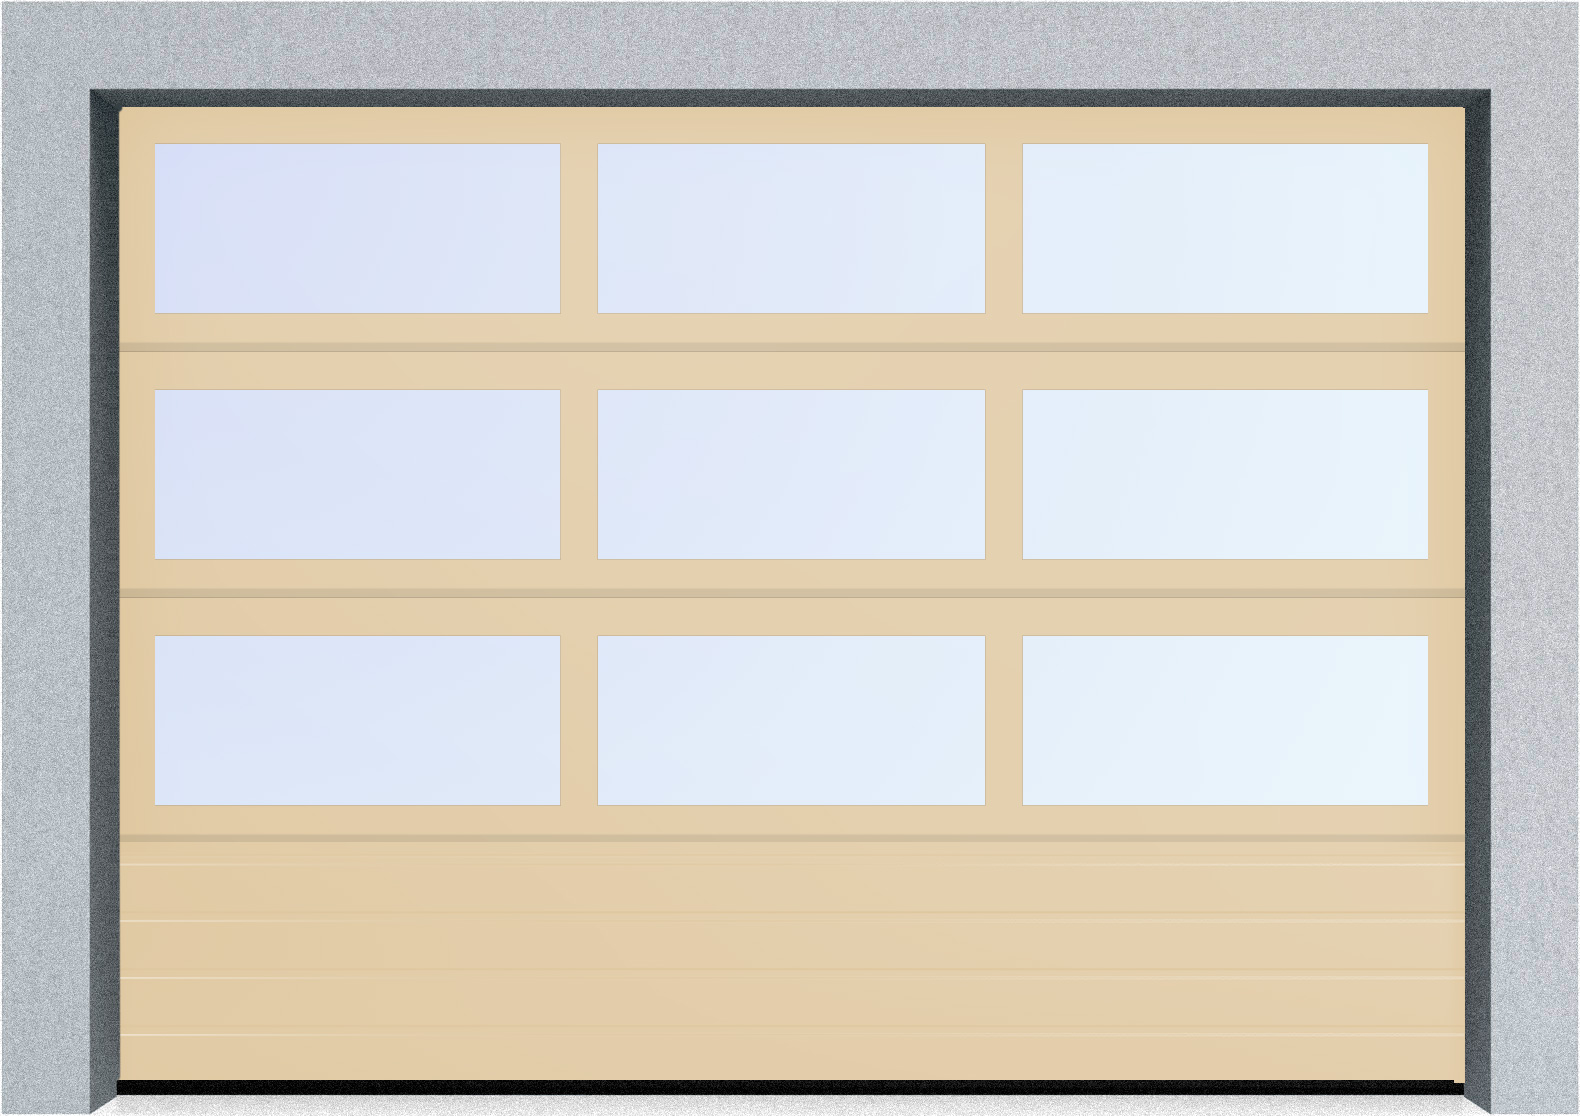  Секционные панорамные ворота серии AluTrend с комбинированным типом полотна (АЛПС) 2500х2625 нижняя панель S-гофр, Микроволна стандартные цвета, фото 2 